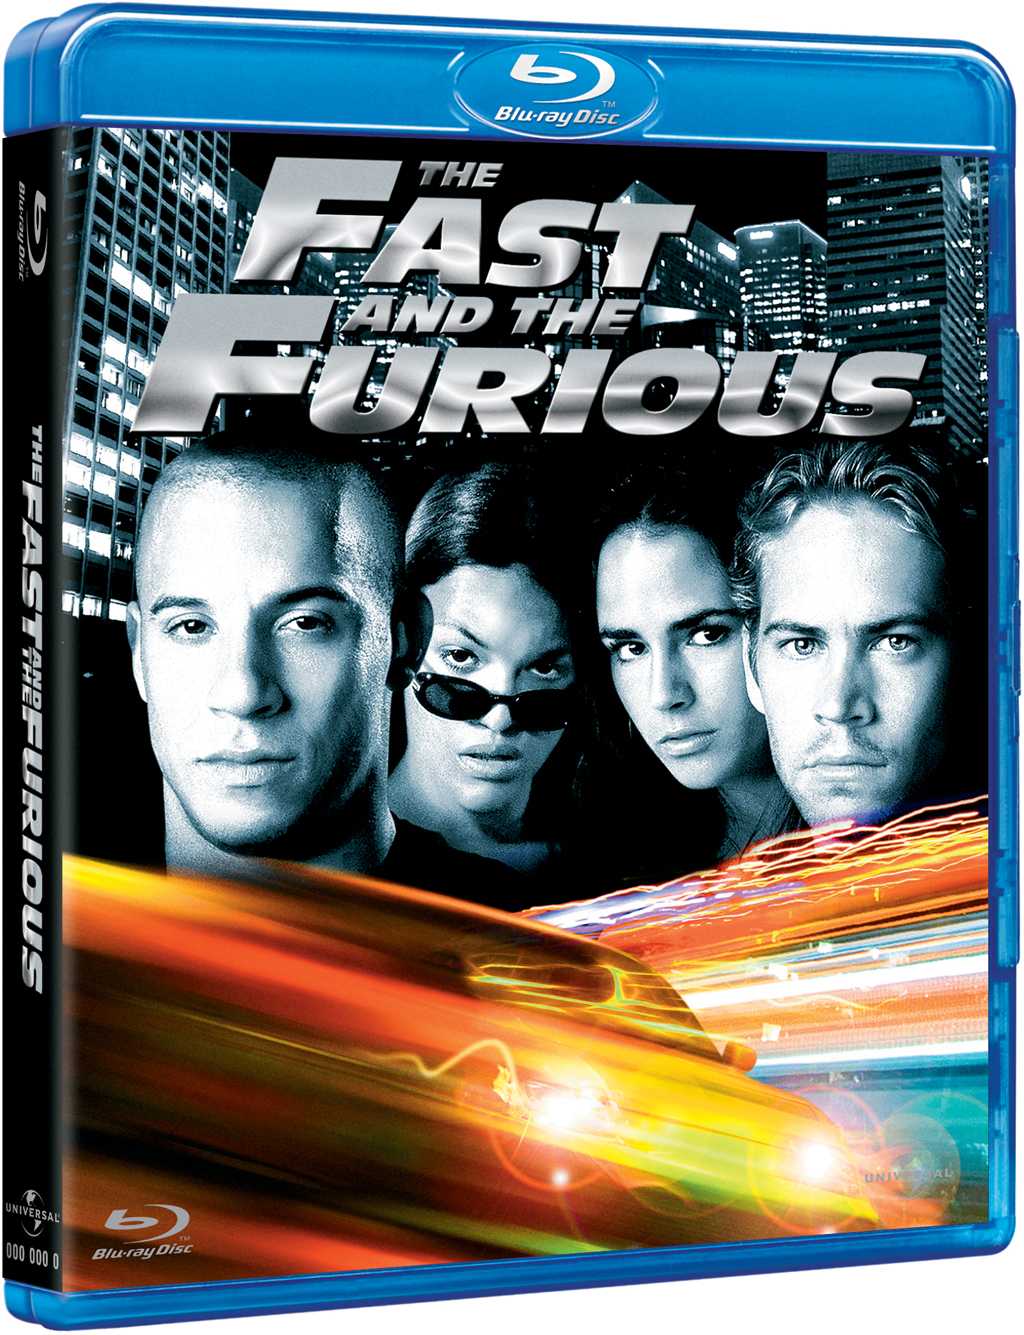 狂野時速 The Fast & Furious.jpg